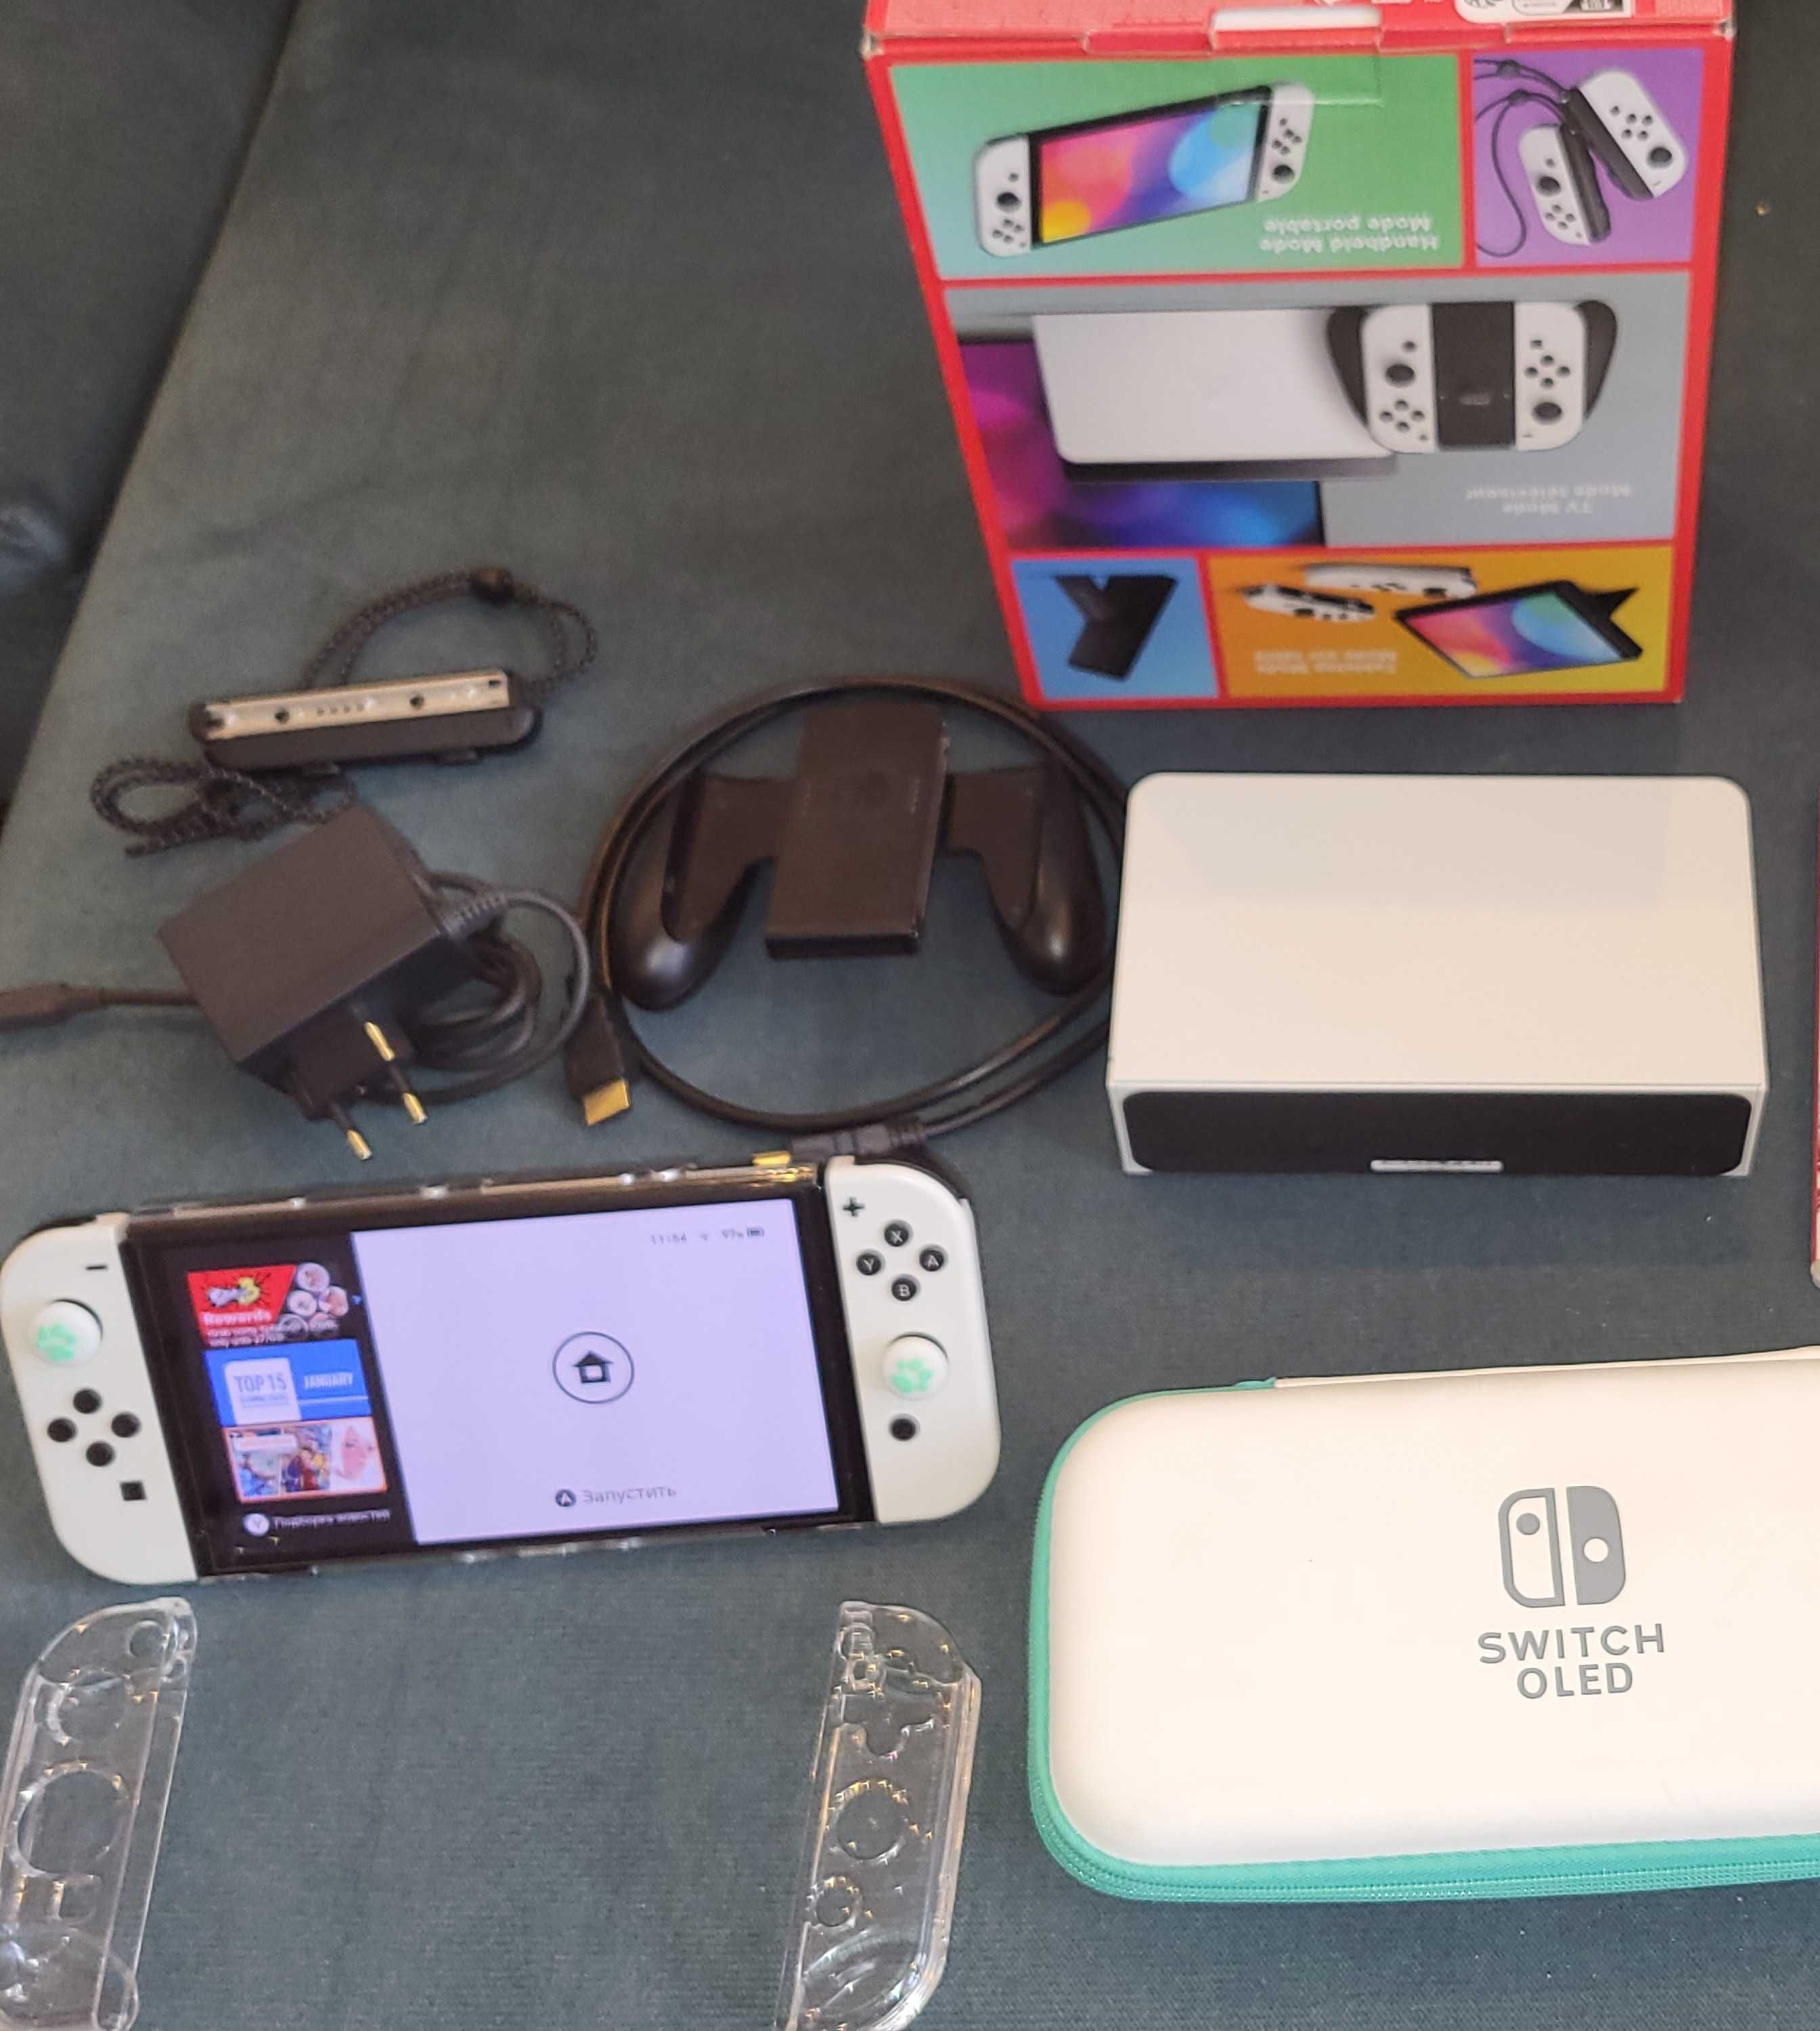 Nintendo Switch OLED (повний комплект) + Ігри